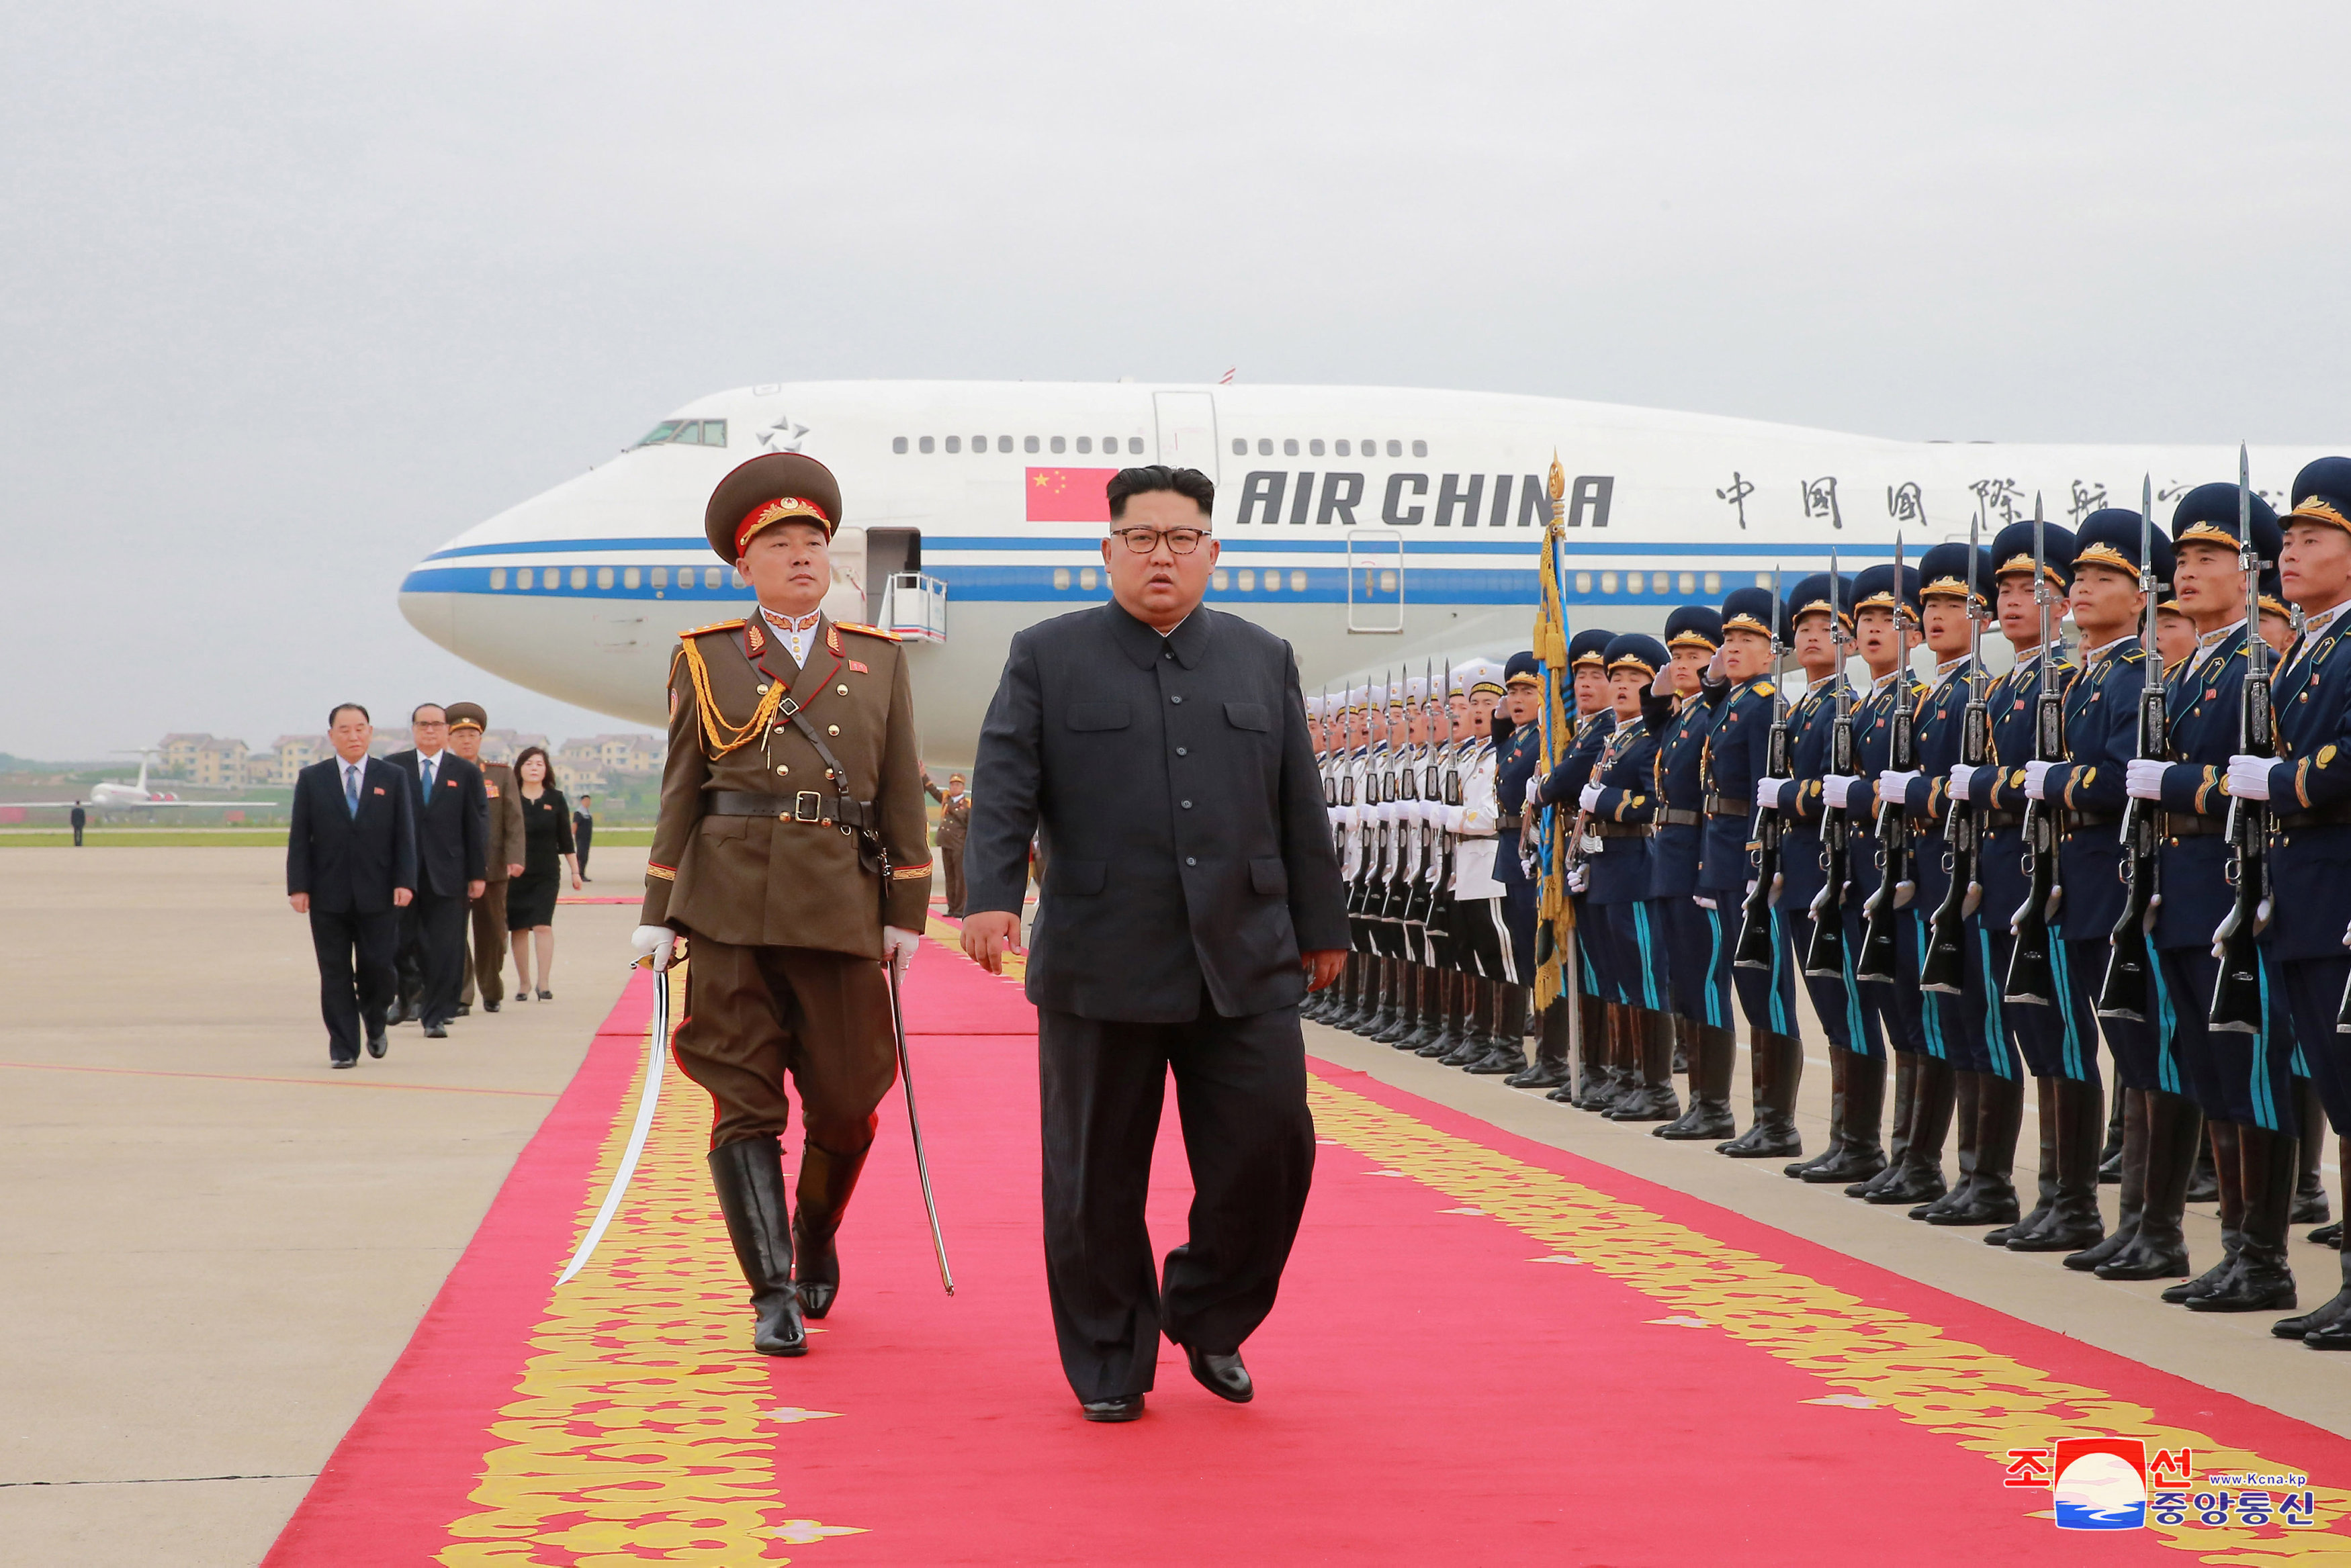 Corea del Norte informa del regreso de Kim Jong Un tras éxito de la cumbre